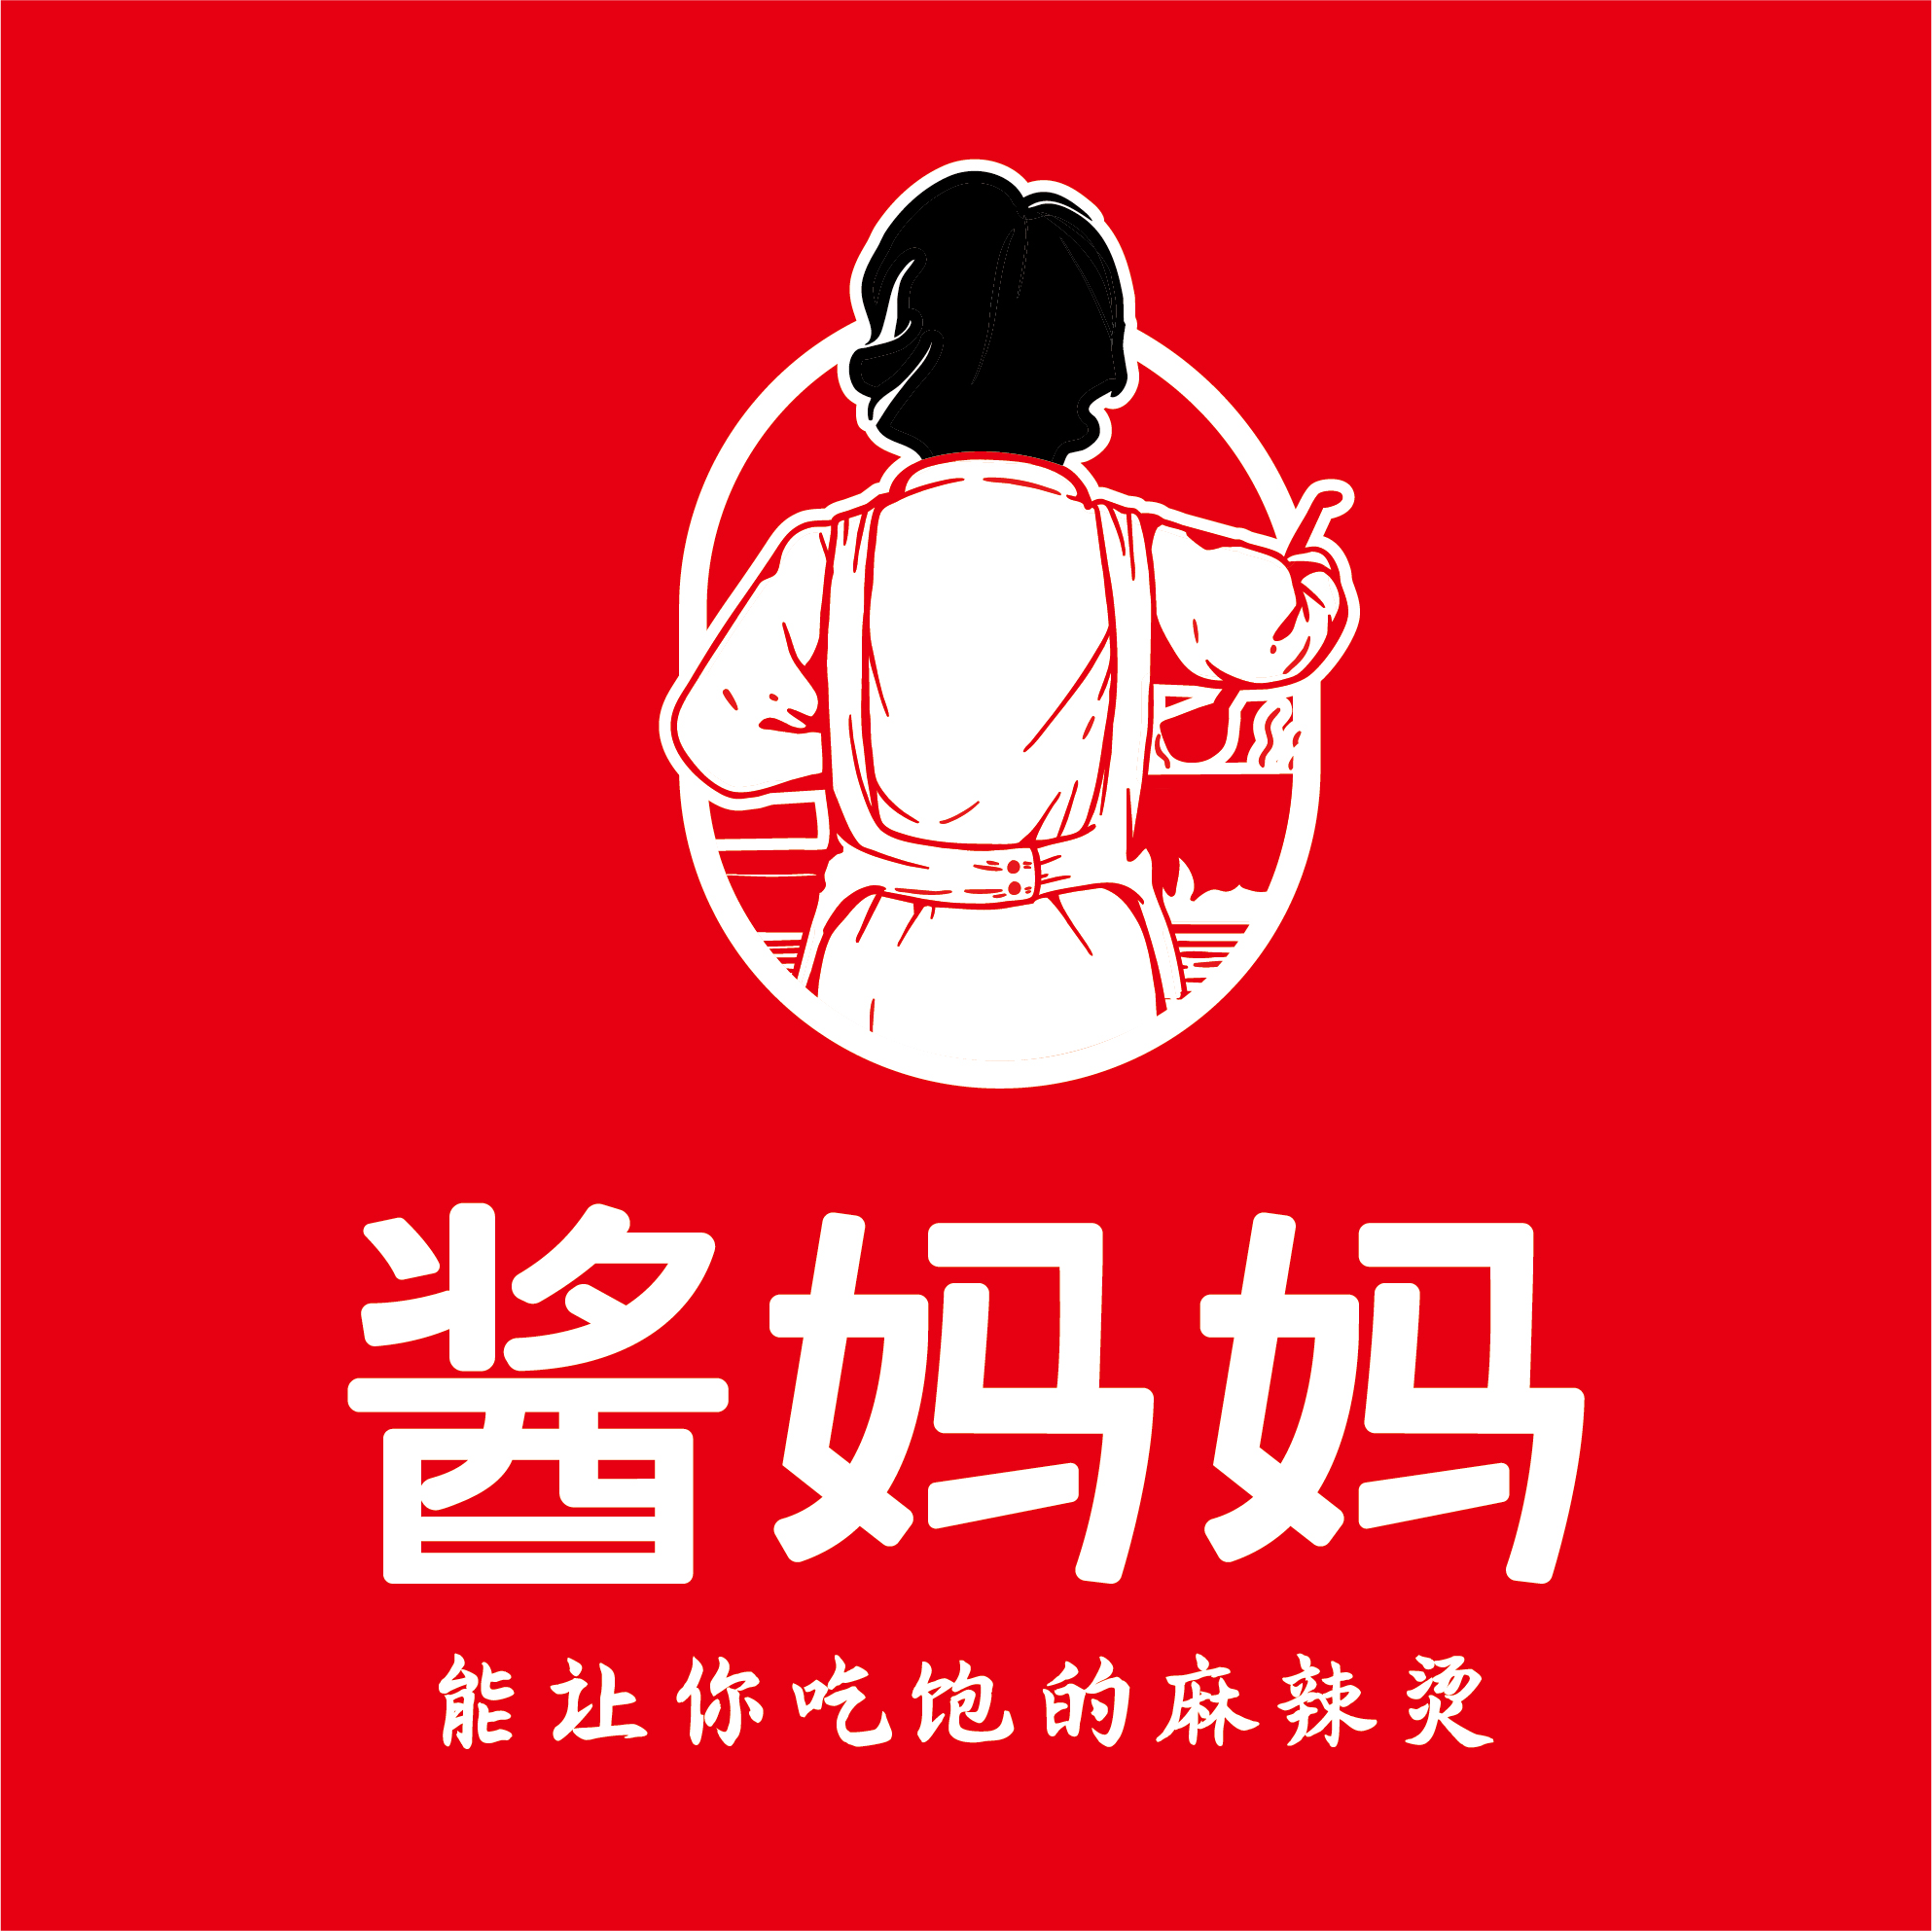 Logo设计徐光英麻辣烫东莞餐饮品牌LOGO设计_潮州餐厅网站设计_广东餐饮装修